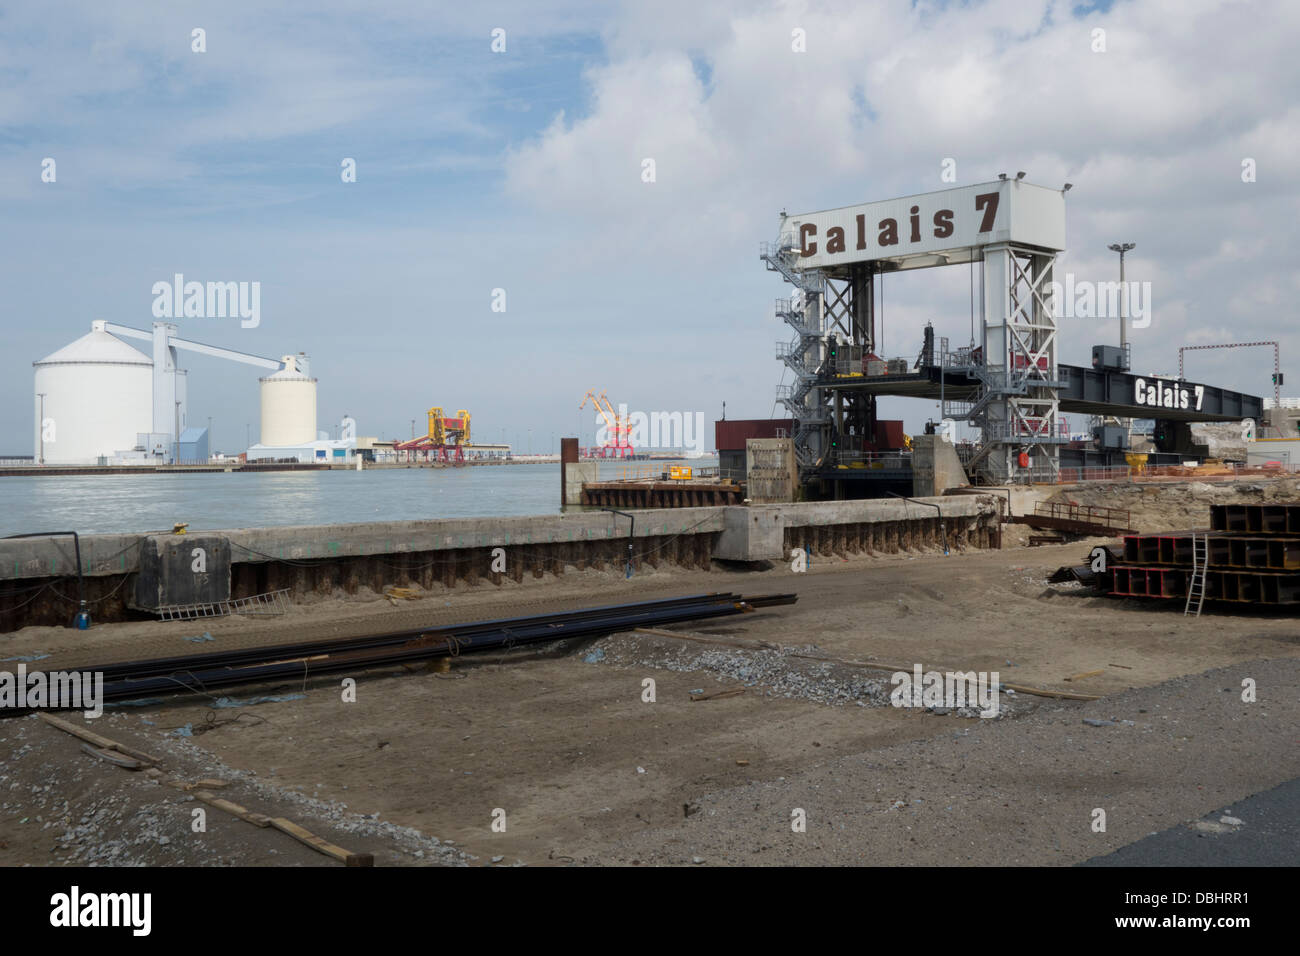 Calais sea port Stock Photo